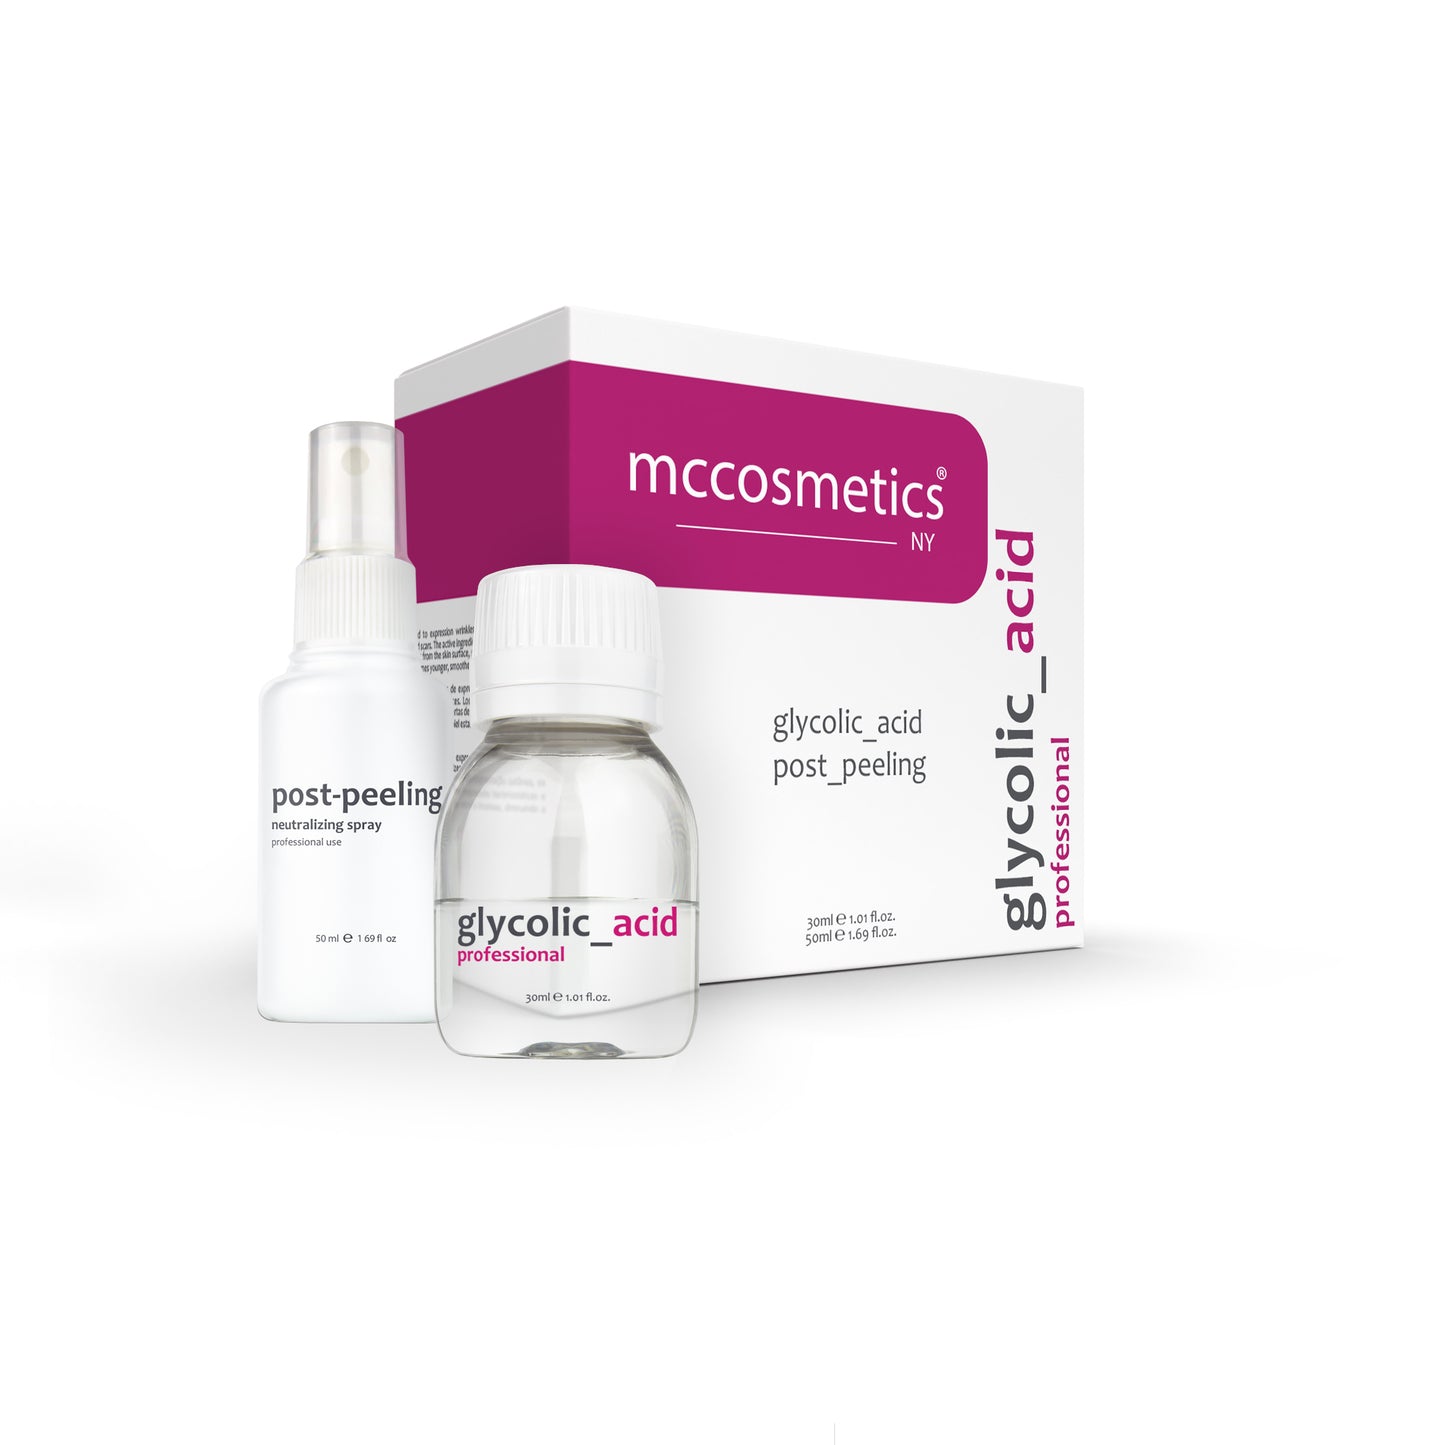 MCCosmetics NY | Glycolic Acid Pack (with Post Peeling Neutralizing Spray)